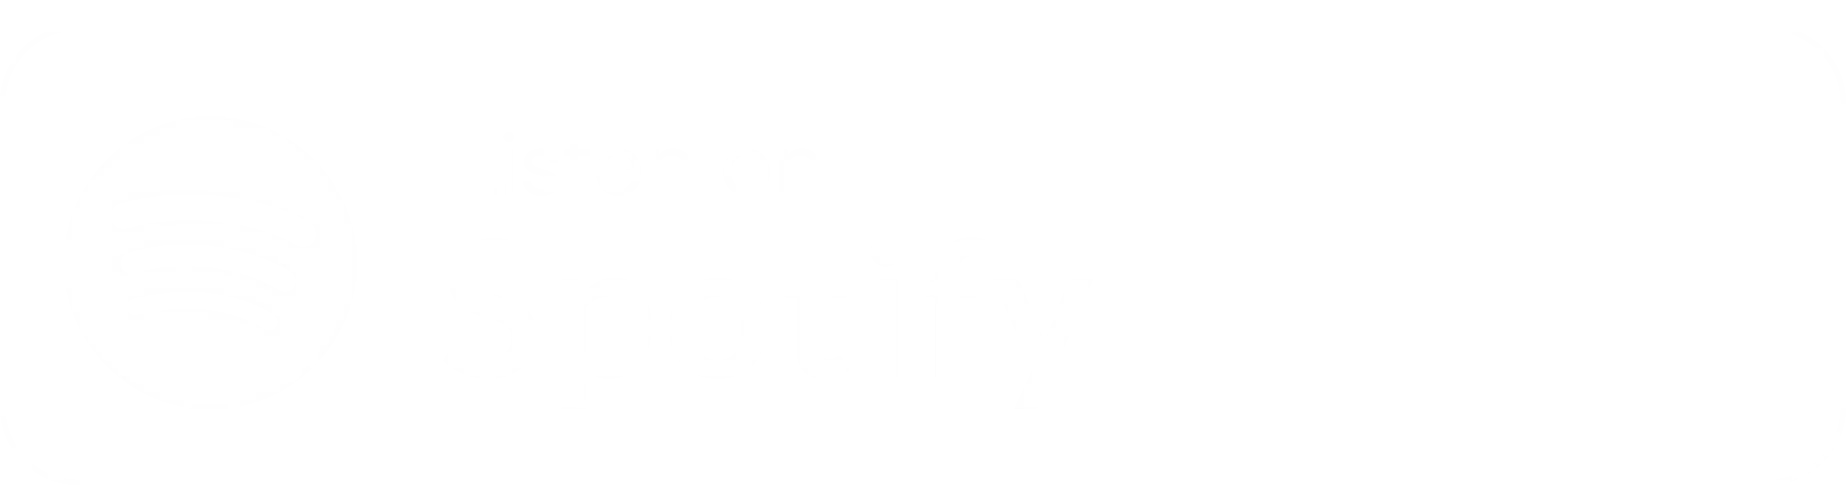 El hierro afila el movimiento del hierro on Spotify